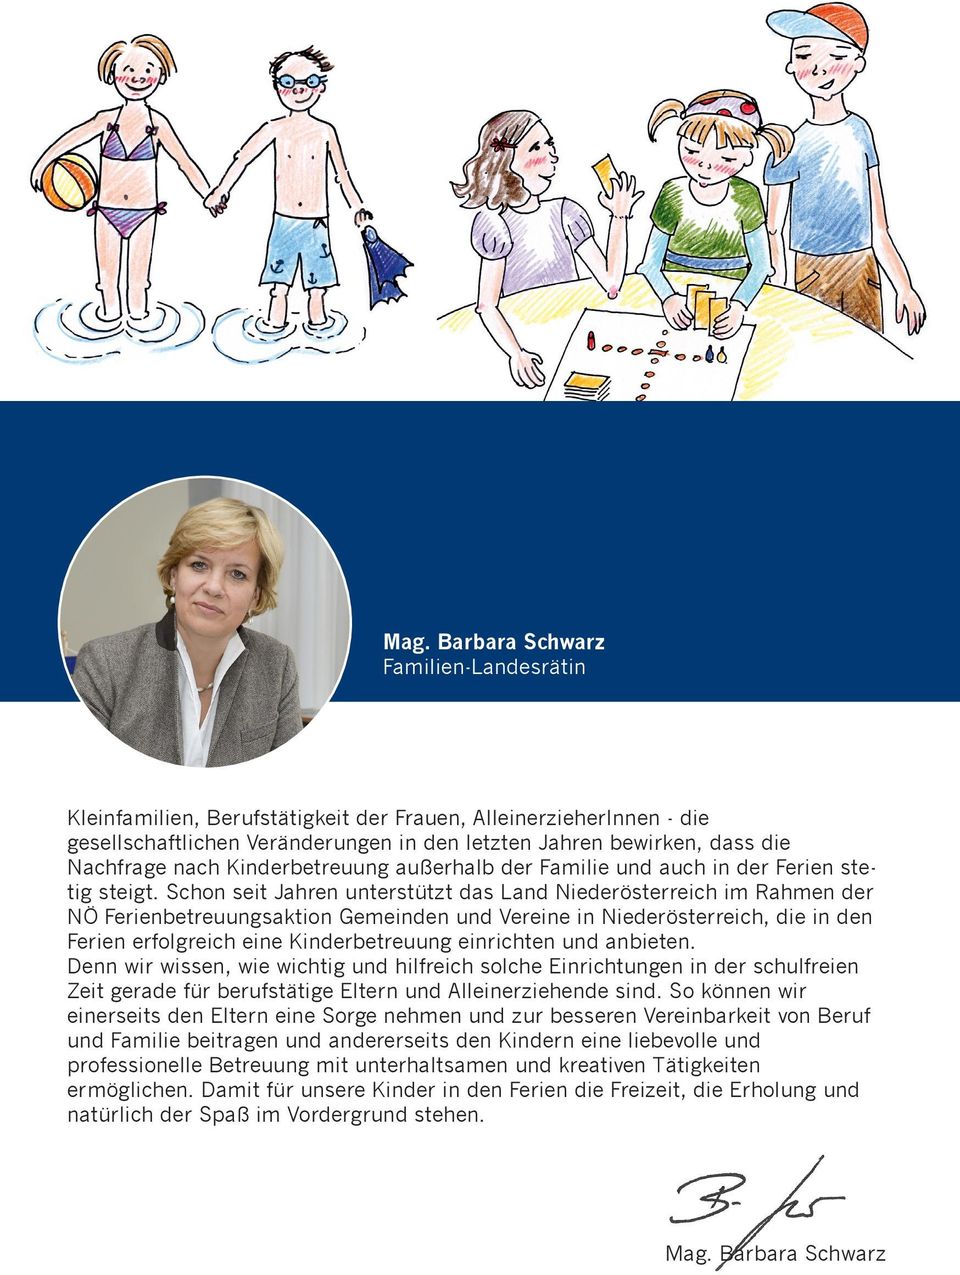 Schon seit Jahren unterstützt das Land Niederösterreich im Rahmen der NÖ Ferienbetreuungsaktion Gemeinden und Vereine in Niederösterreich, die in den Ferien erfolgreich eine Kinderbetreuung